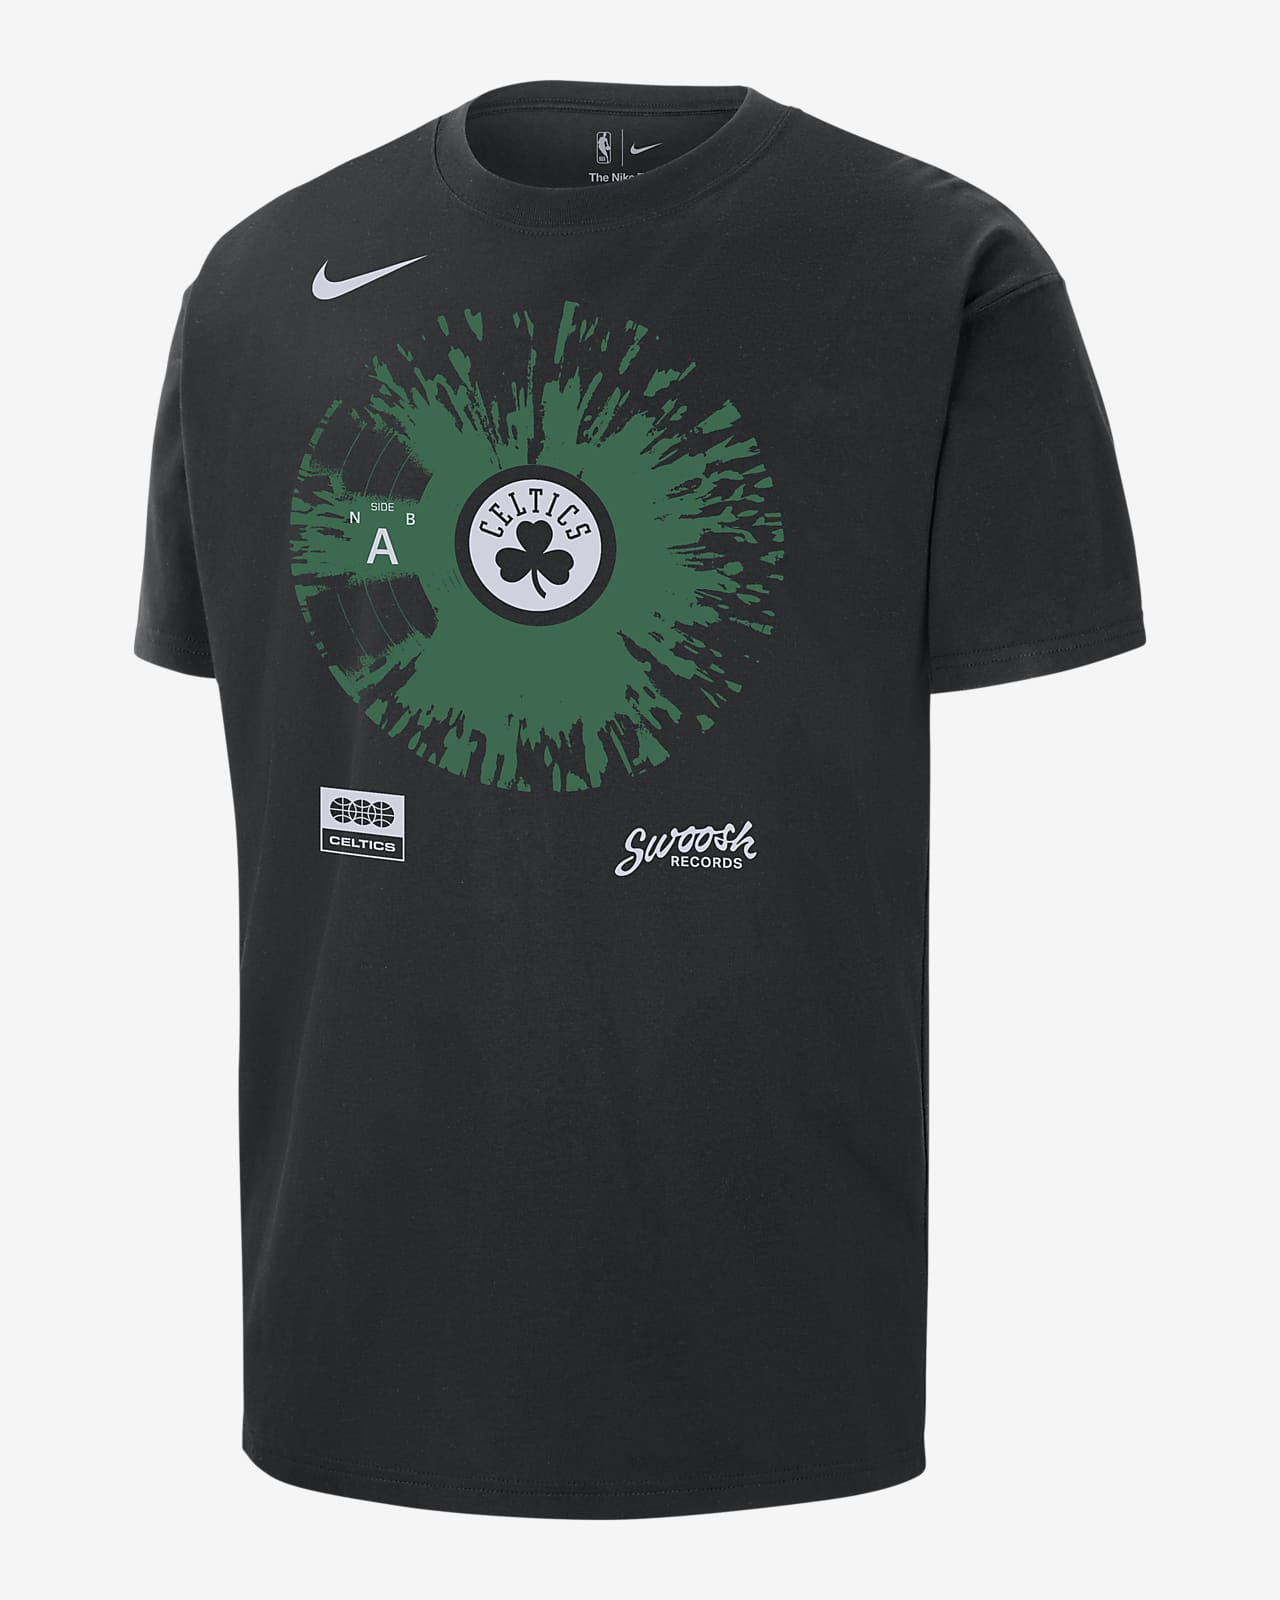 Playera Nike de la NBA para hombre Boston Celtics Max90